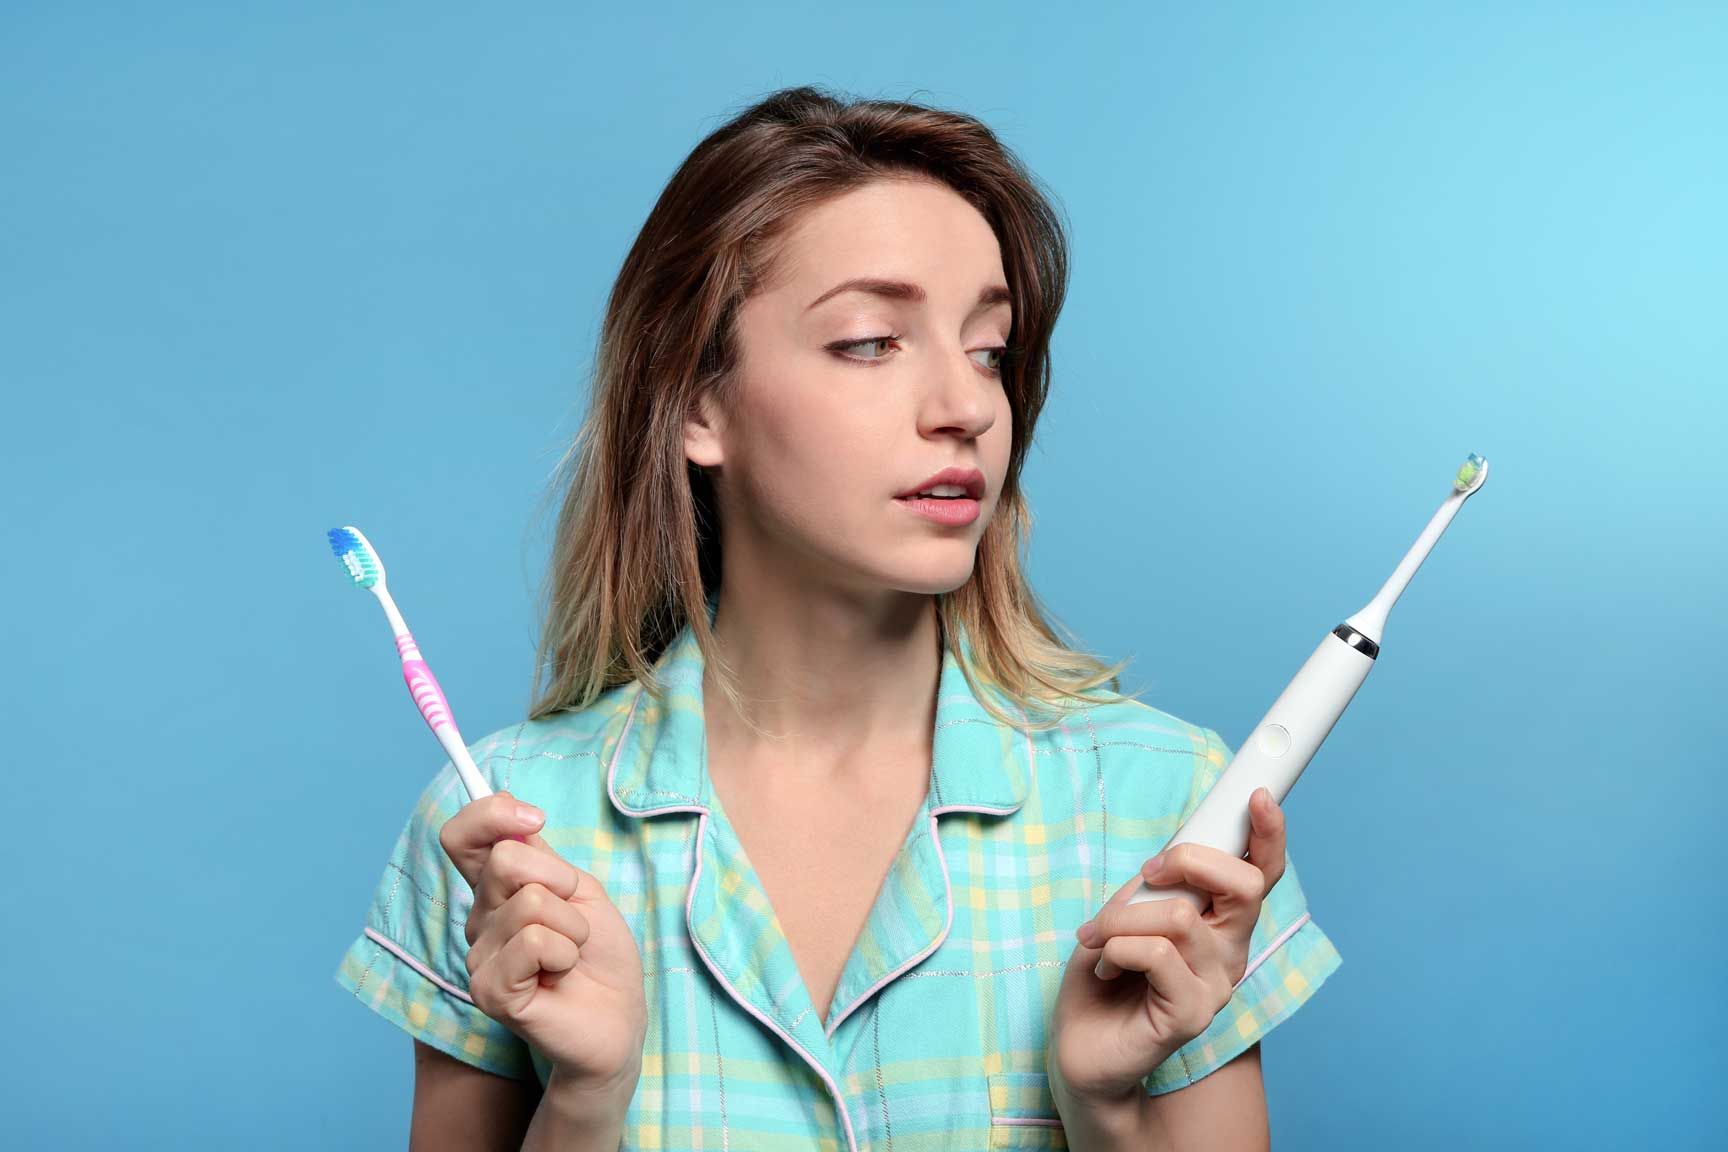 ¿Qué cepillo dental debo usar? El cepillo de dientes eléctrico es más eficiente para eliminar la placa de los dientes.